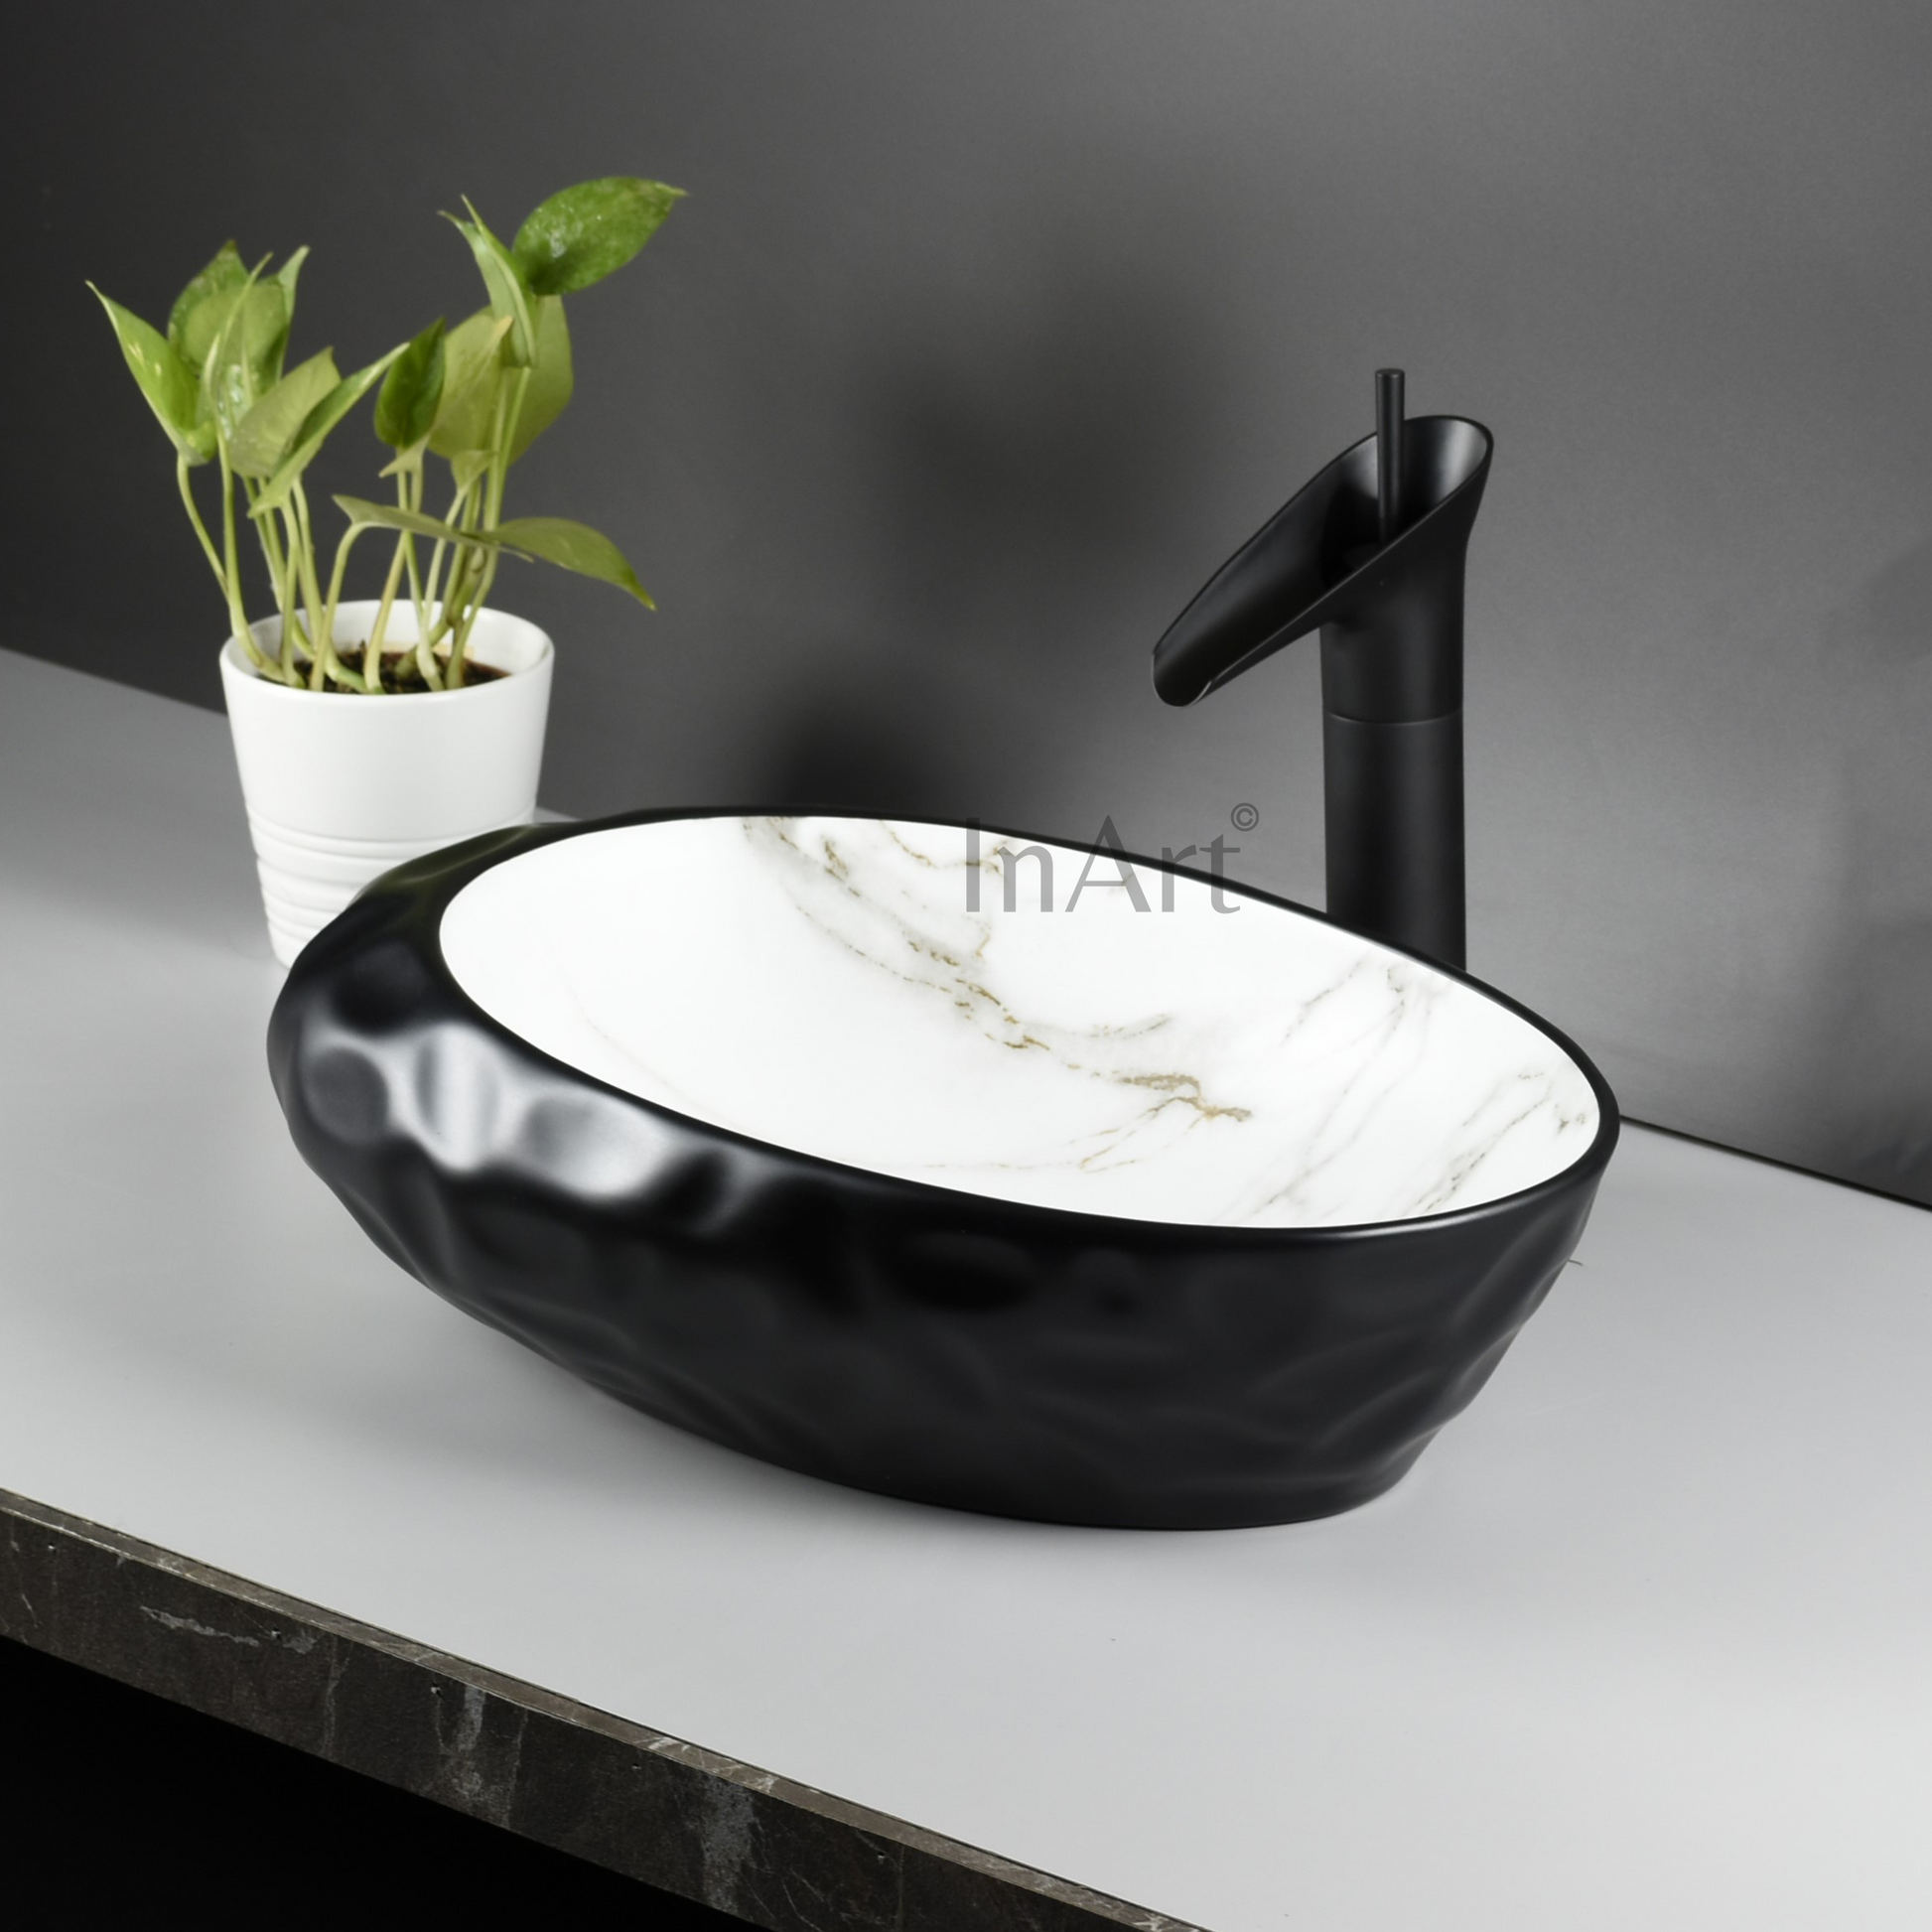 InArt Ceramic Counter or Table Top Wash Basin Black Matt 49x31 CM - InArt-Studio